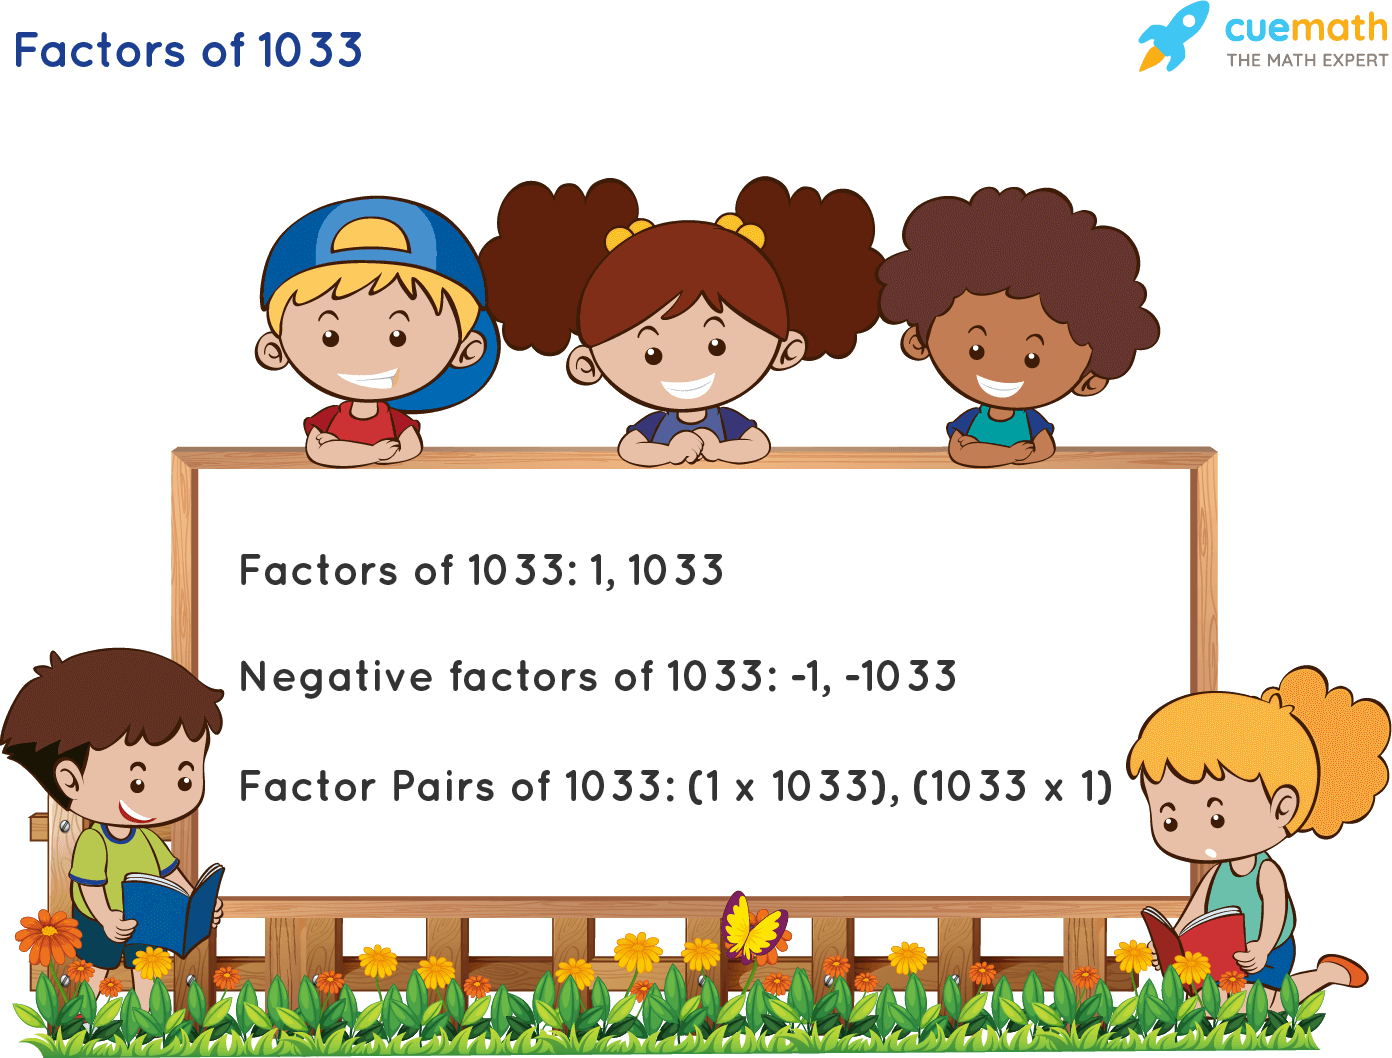 Factors of 1033